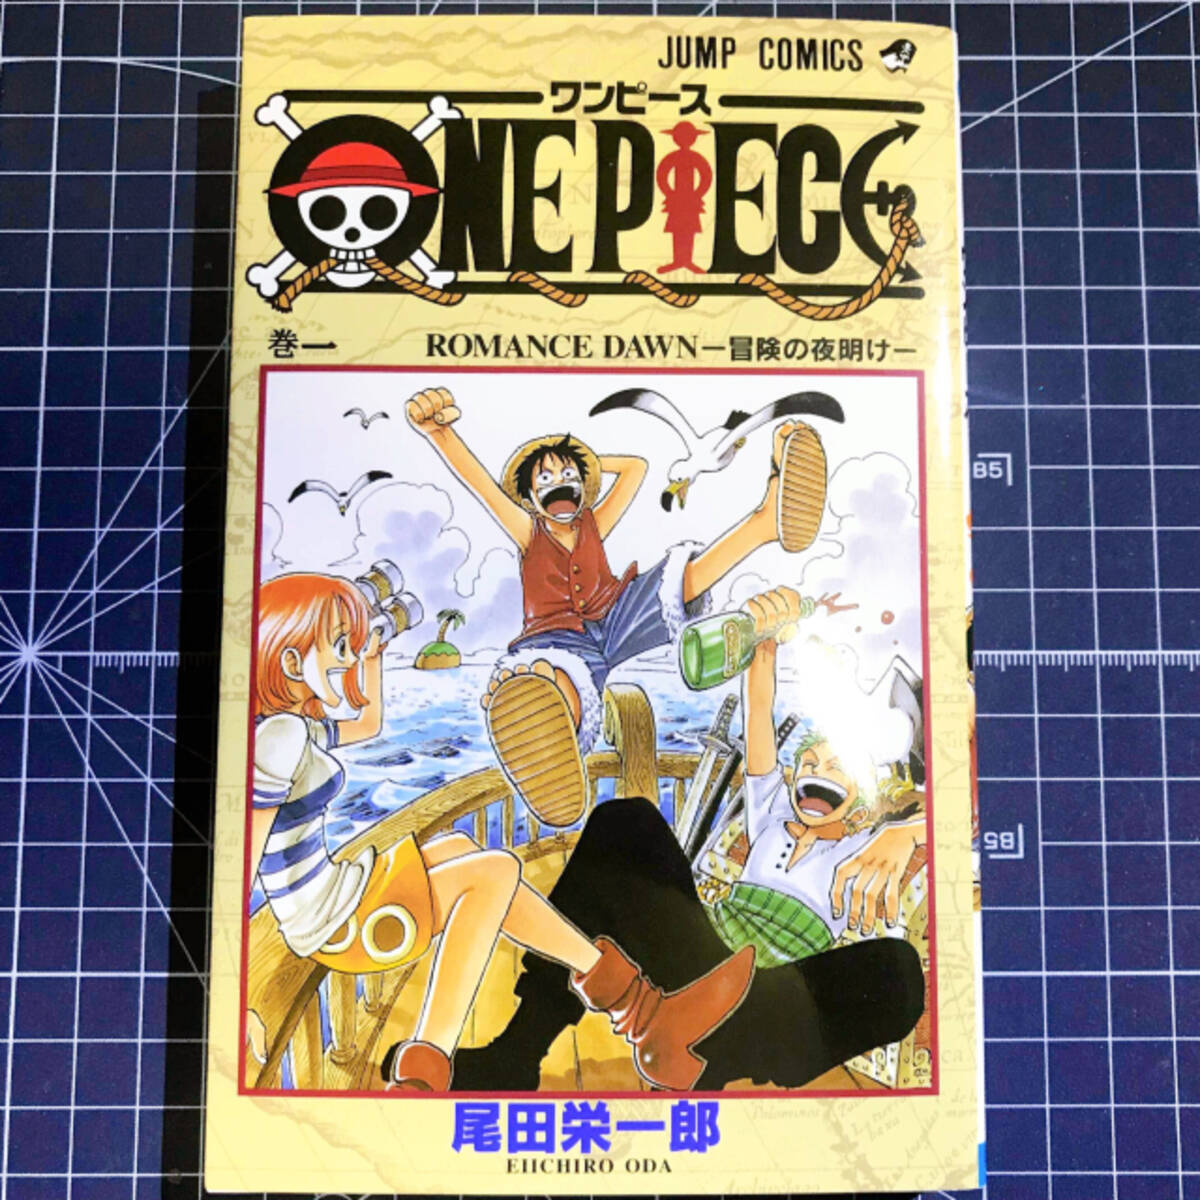 ルフィ ロー キッド 3船長が共闘 One Piece 1001話の激アツ展開に 好きが溢れてしまっ 21年1月日 エキサイトニュース 2 2